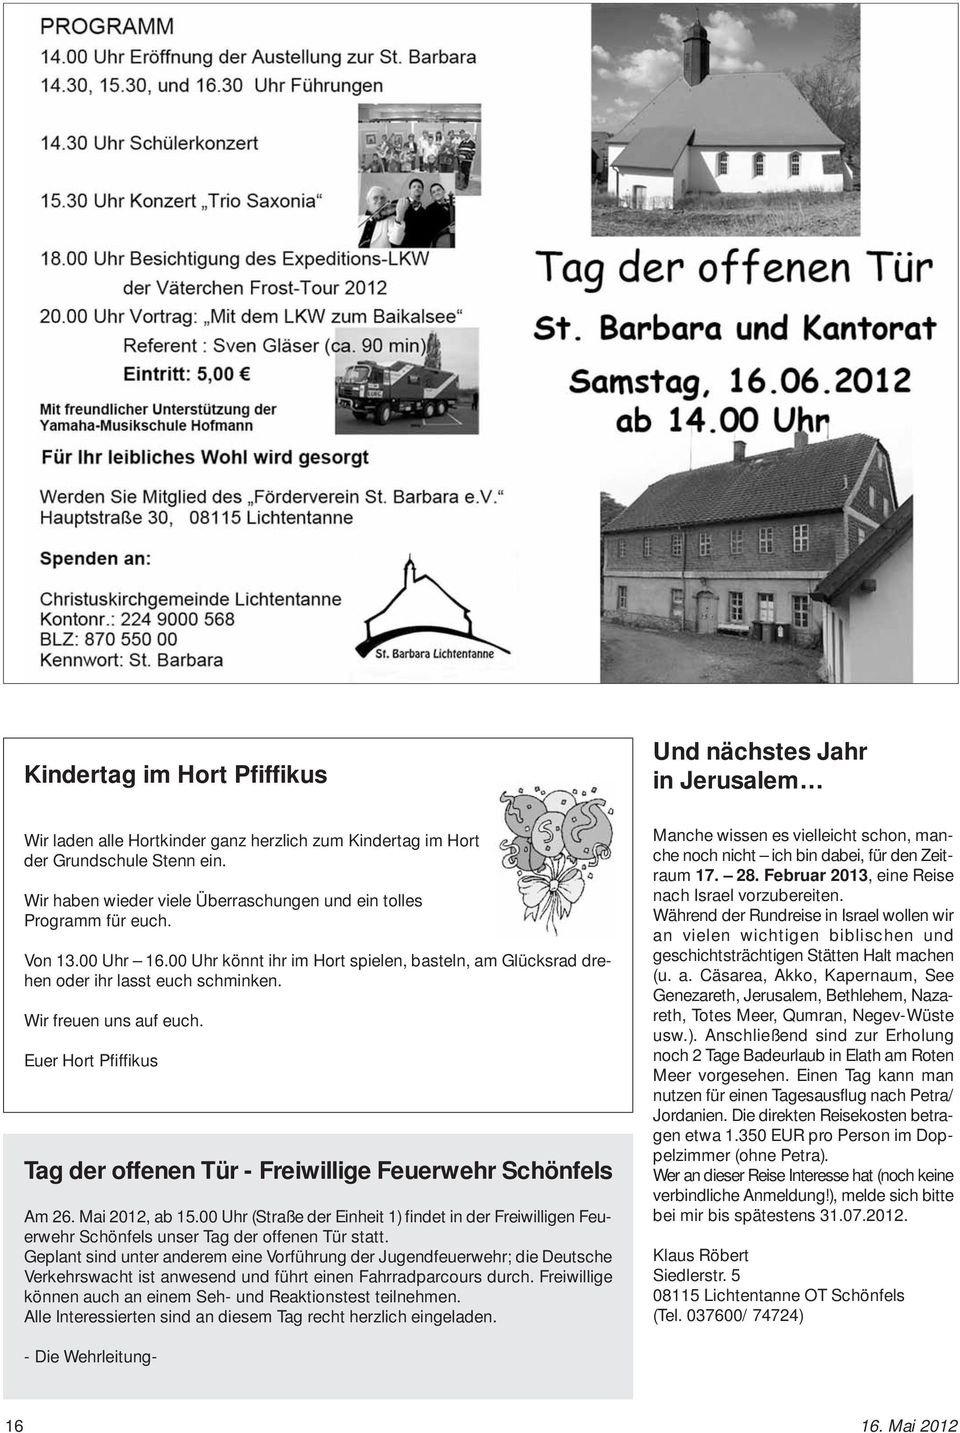 Euer Hort Pfiffikus Tag der offenen Tür - Freiwillige Feuerwehr Schönfels Am 26. Mai 2012, ab 15.